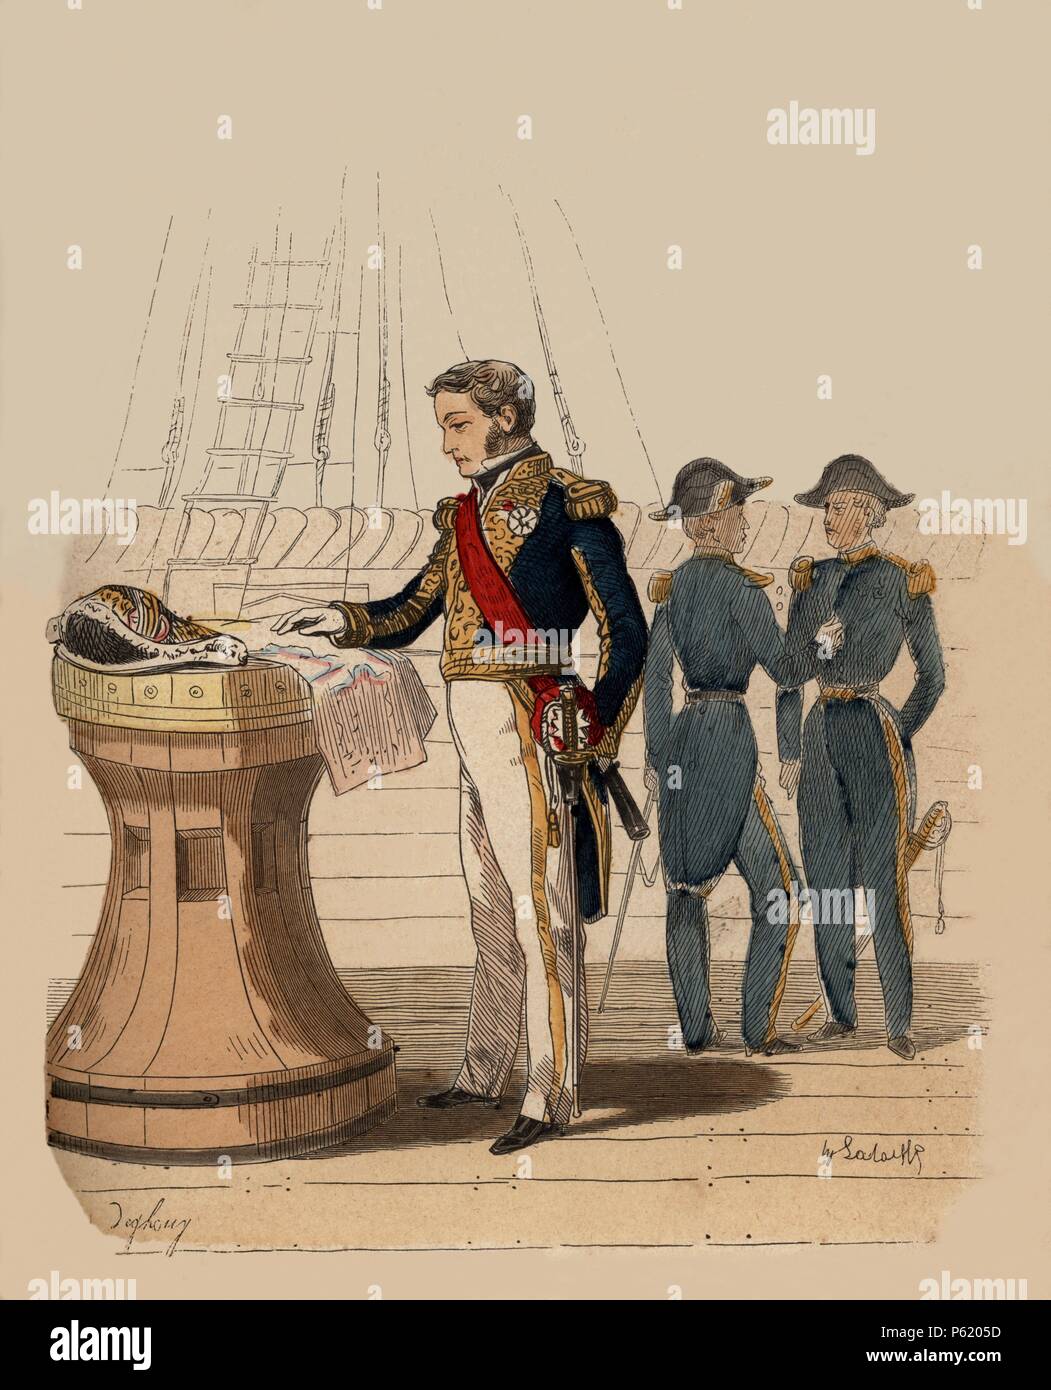 Francia. Siglo XIX. Uniforme de Almirante de marina, año 1857. Grabado de 1864. Stock Photo